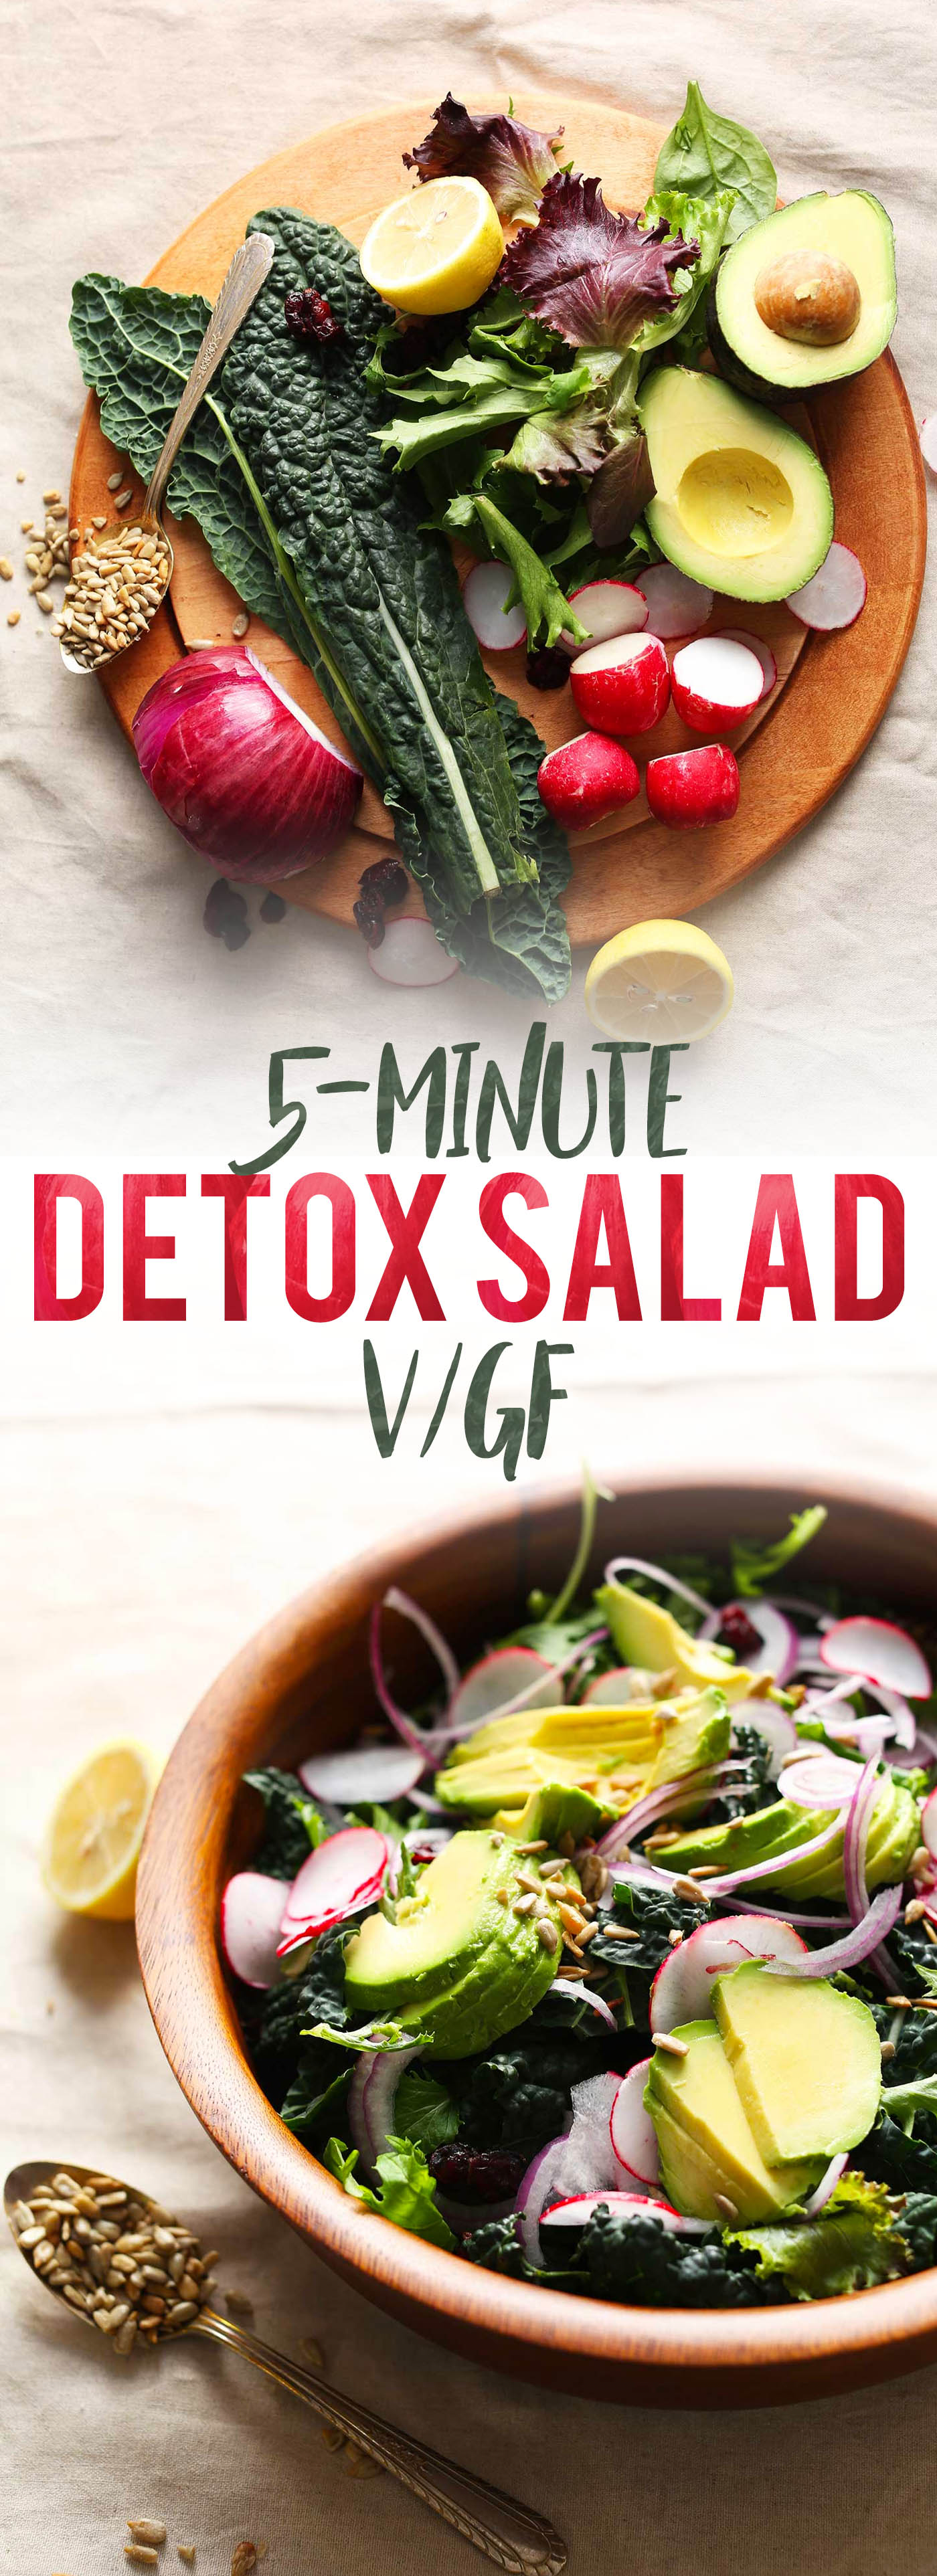 Detox Salad with No-Mix Dressing | Minimalist Baker Recipes